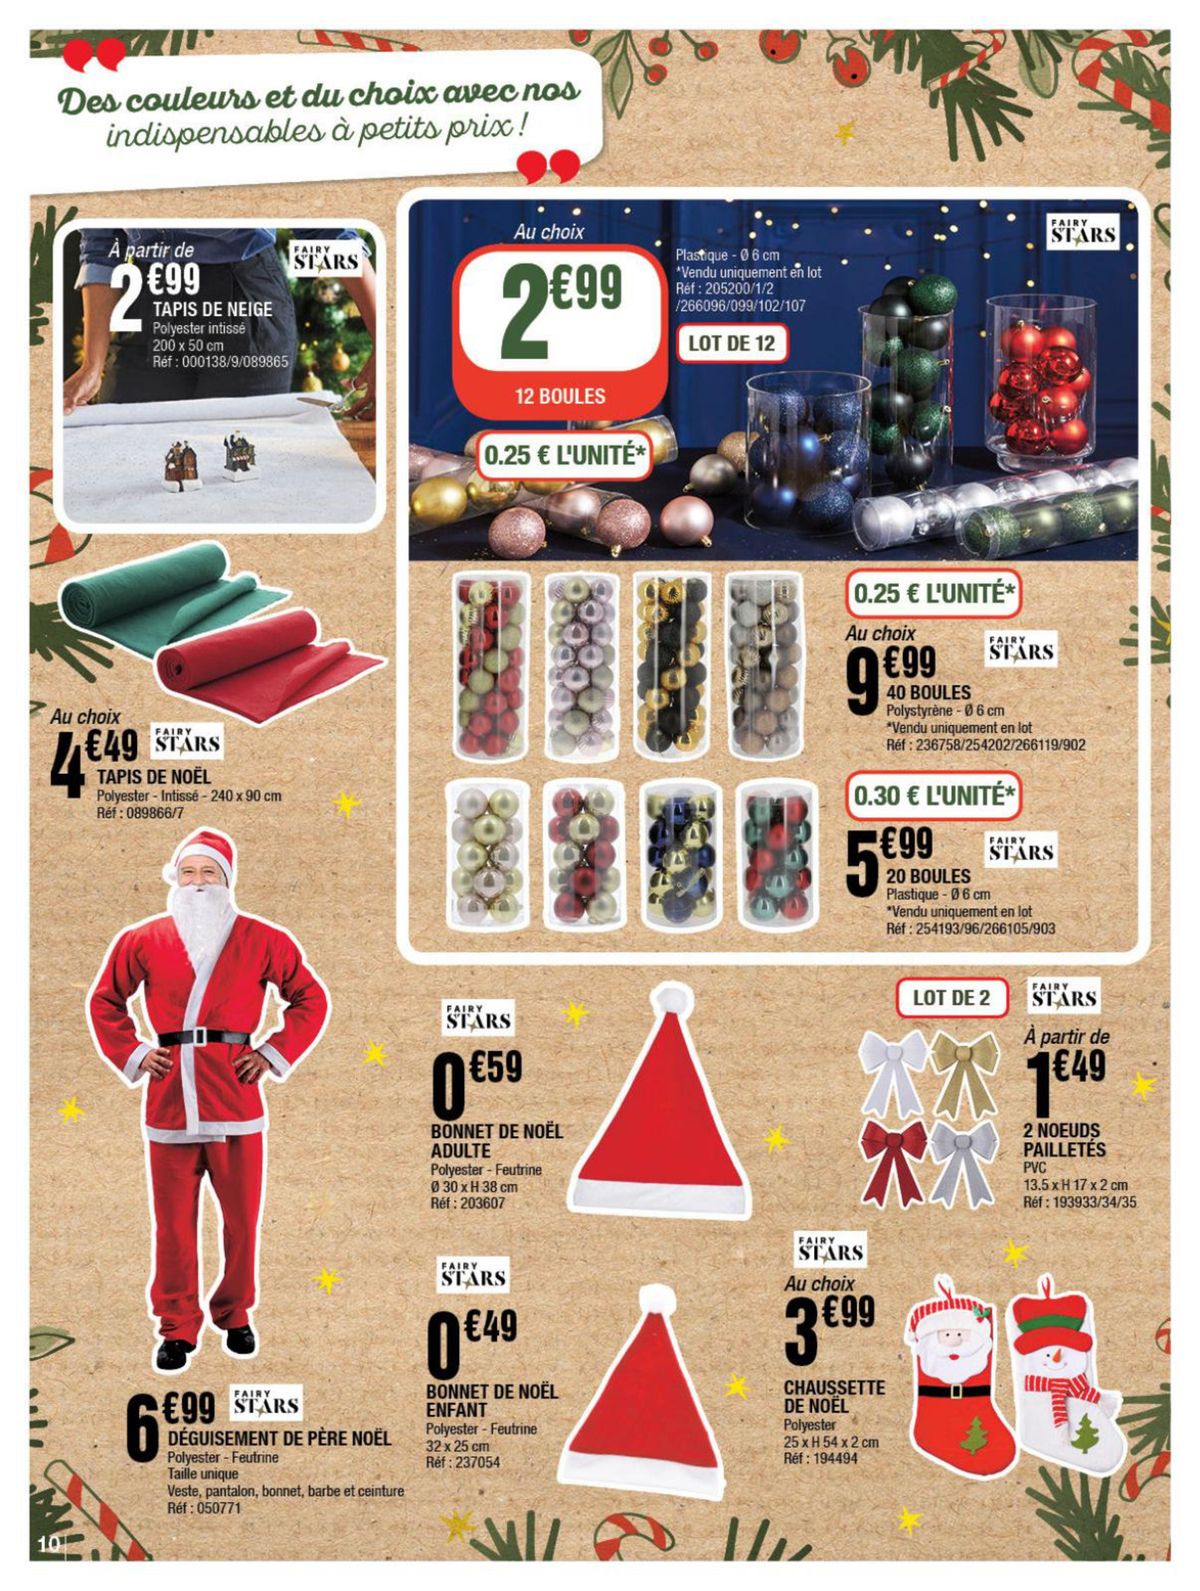 Catalogue Mes idées cadeaux pour briller à Noël, page 00010